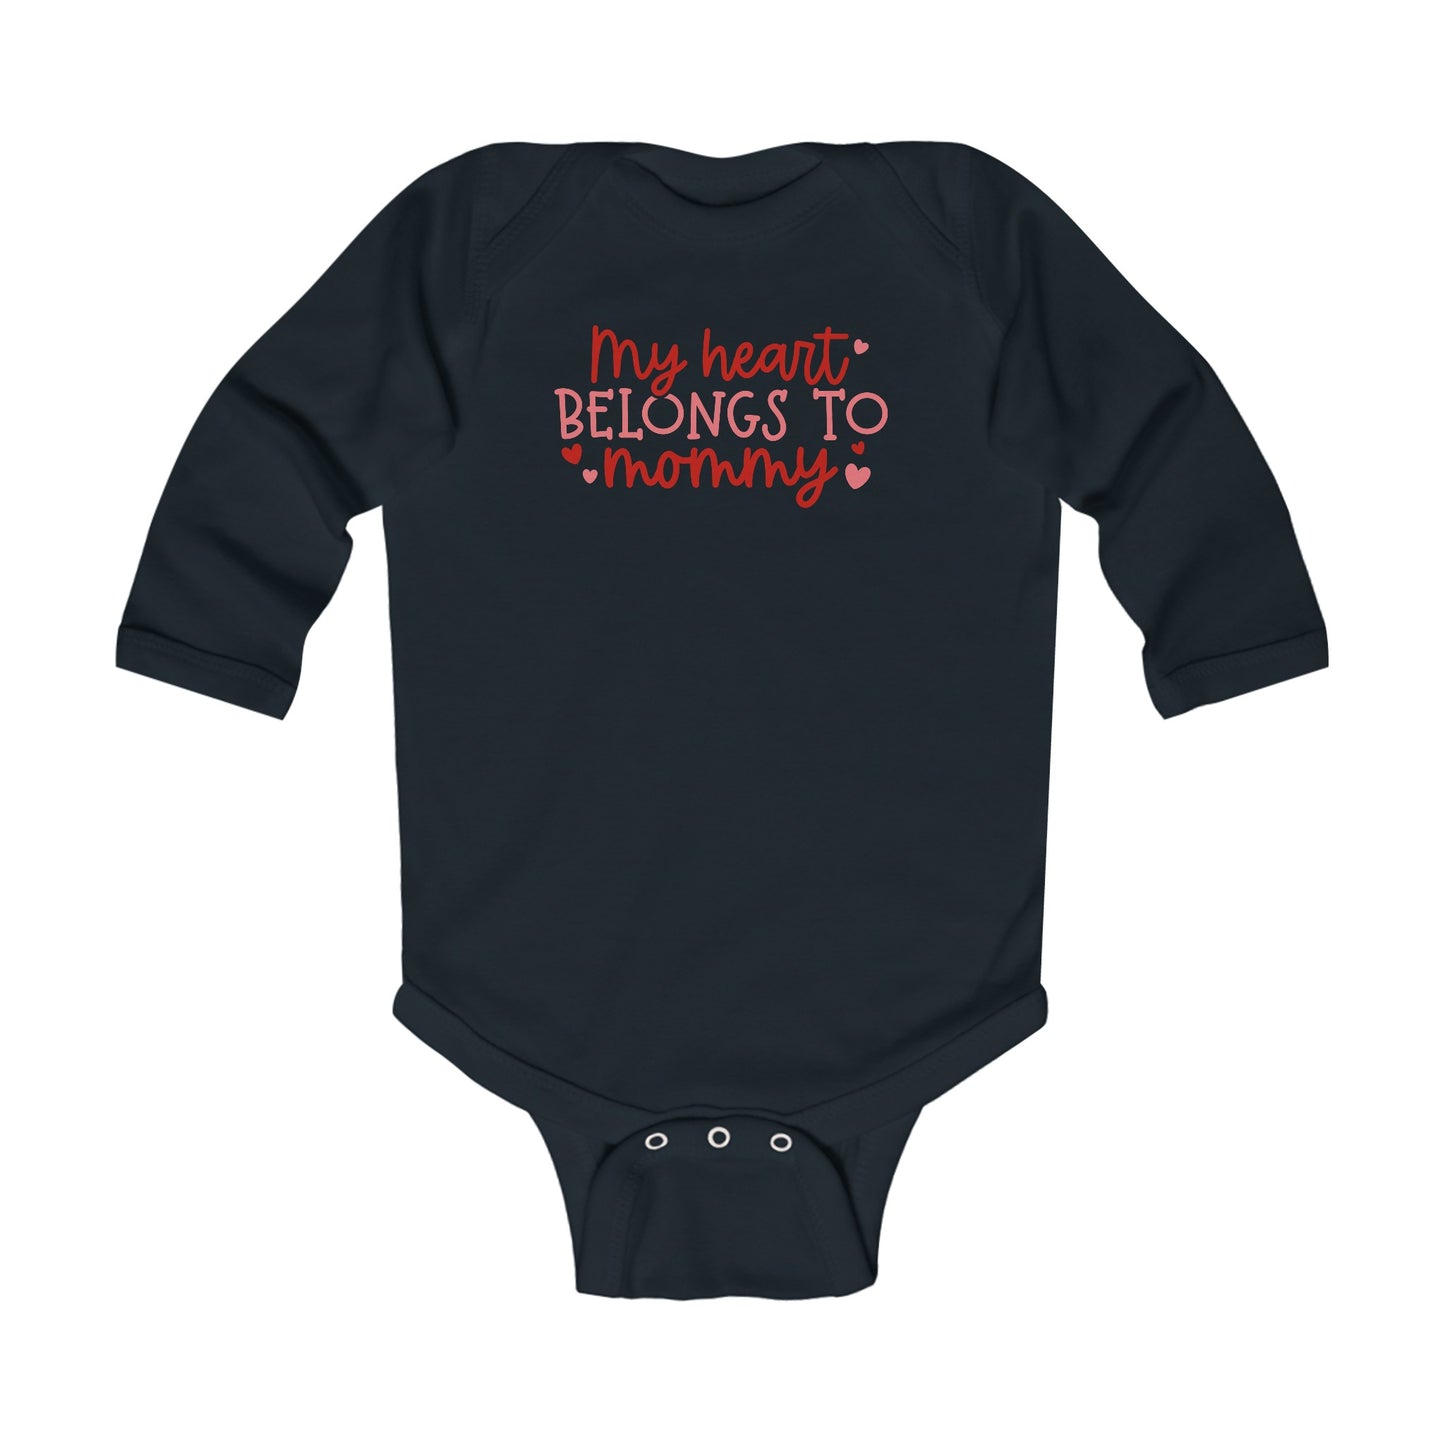 My Heart Belongs to Mommy - Hearts - Infant Long Sleeve Bodysuit